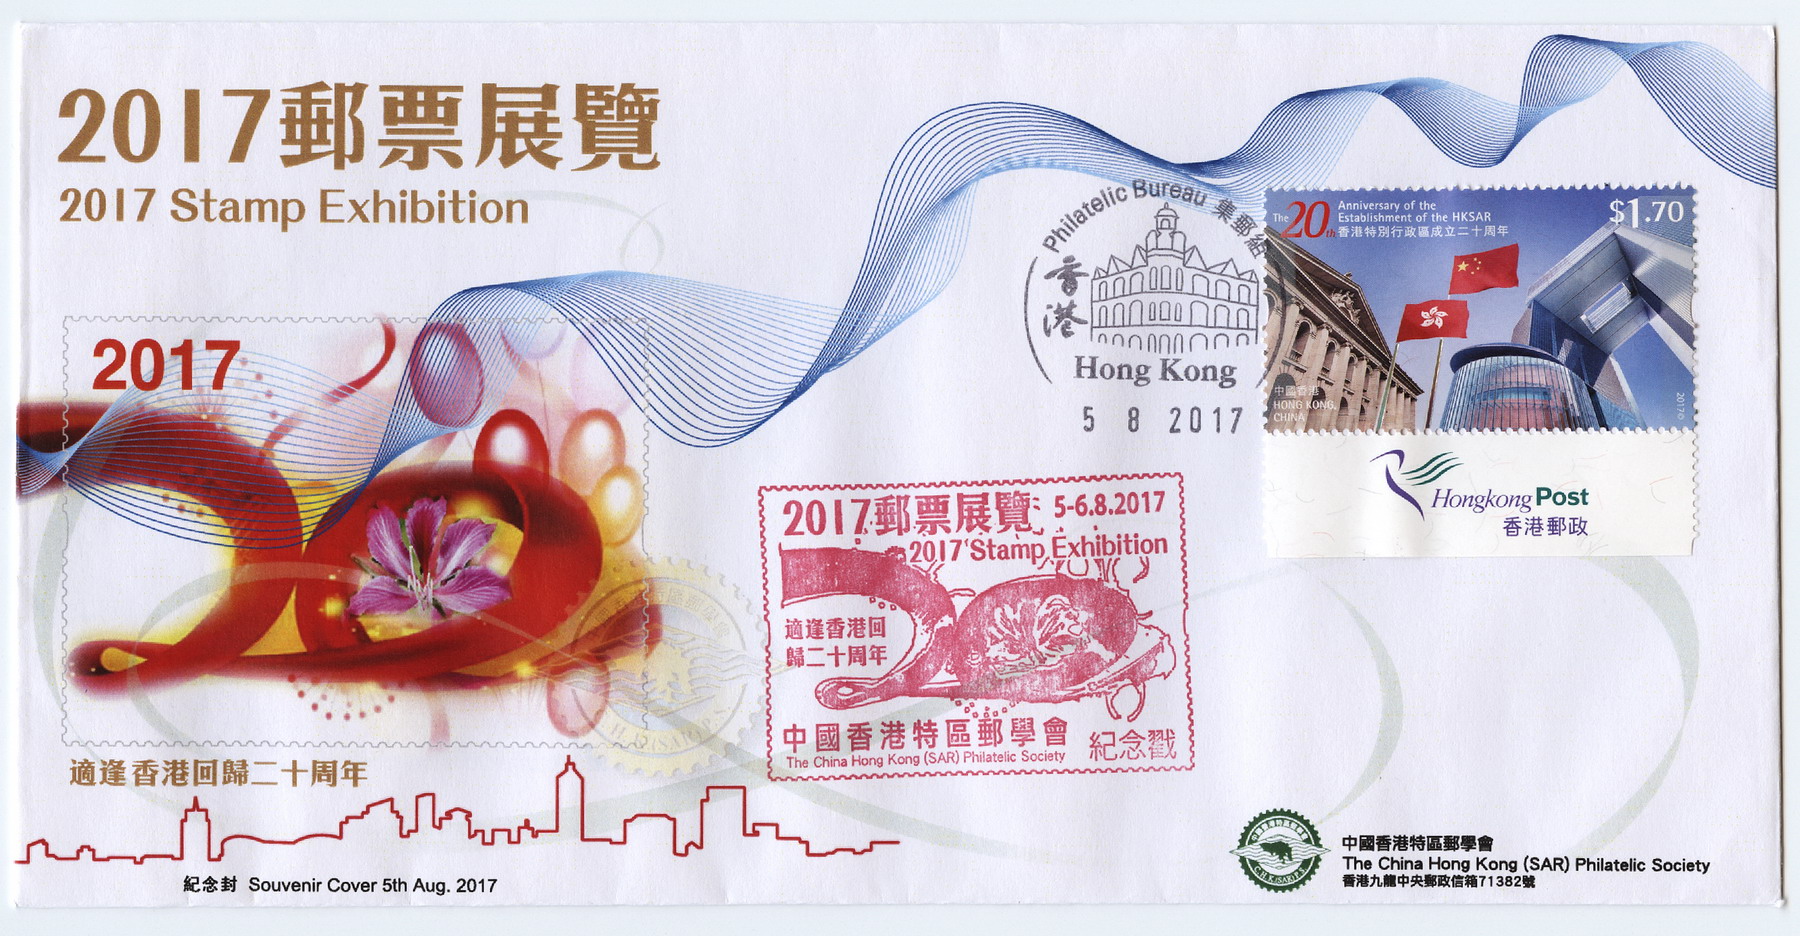 2017香港特区邮票展览纪念封-1_resize.jpg